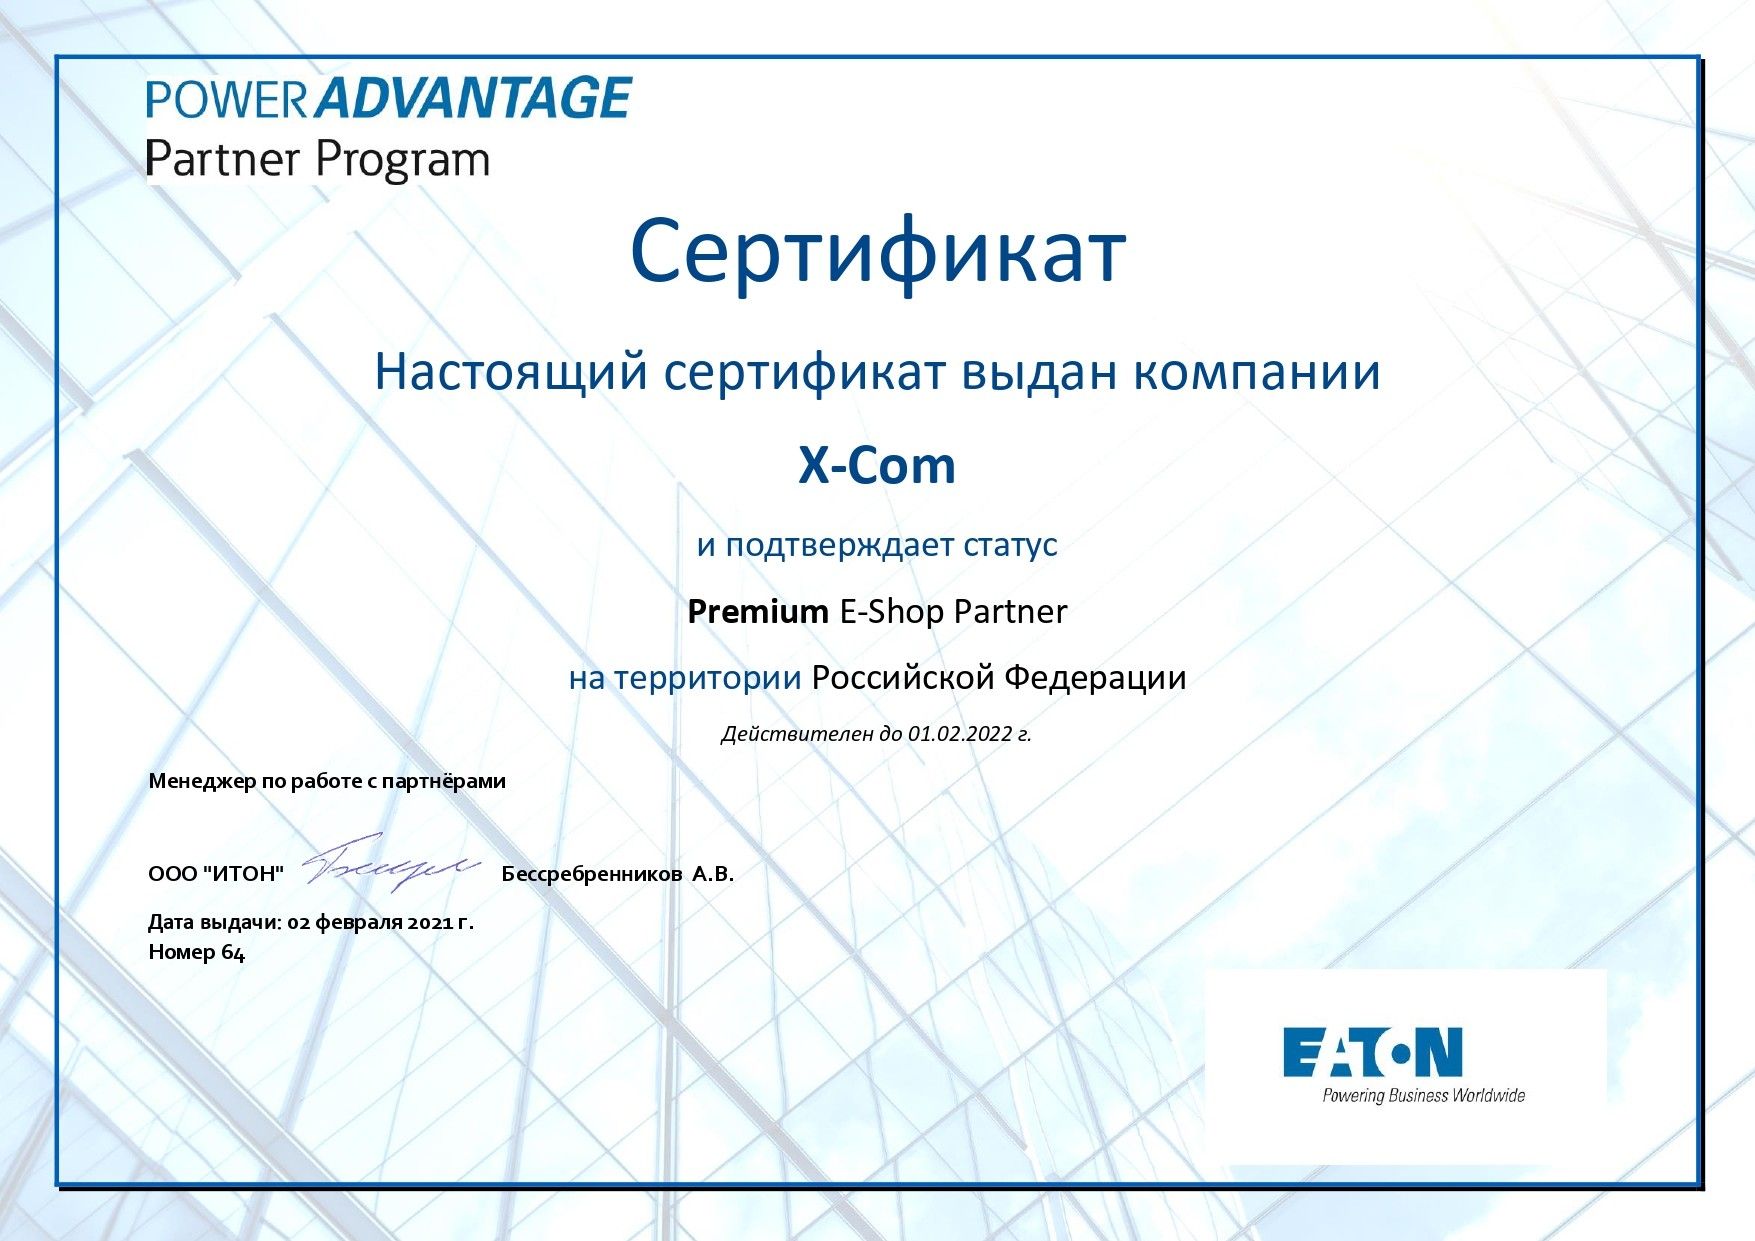 X-Com подтвердила статус премиального партнера EATON